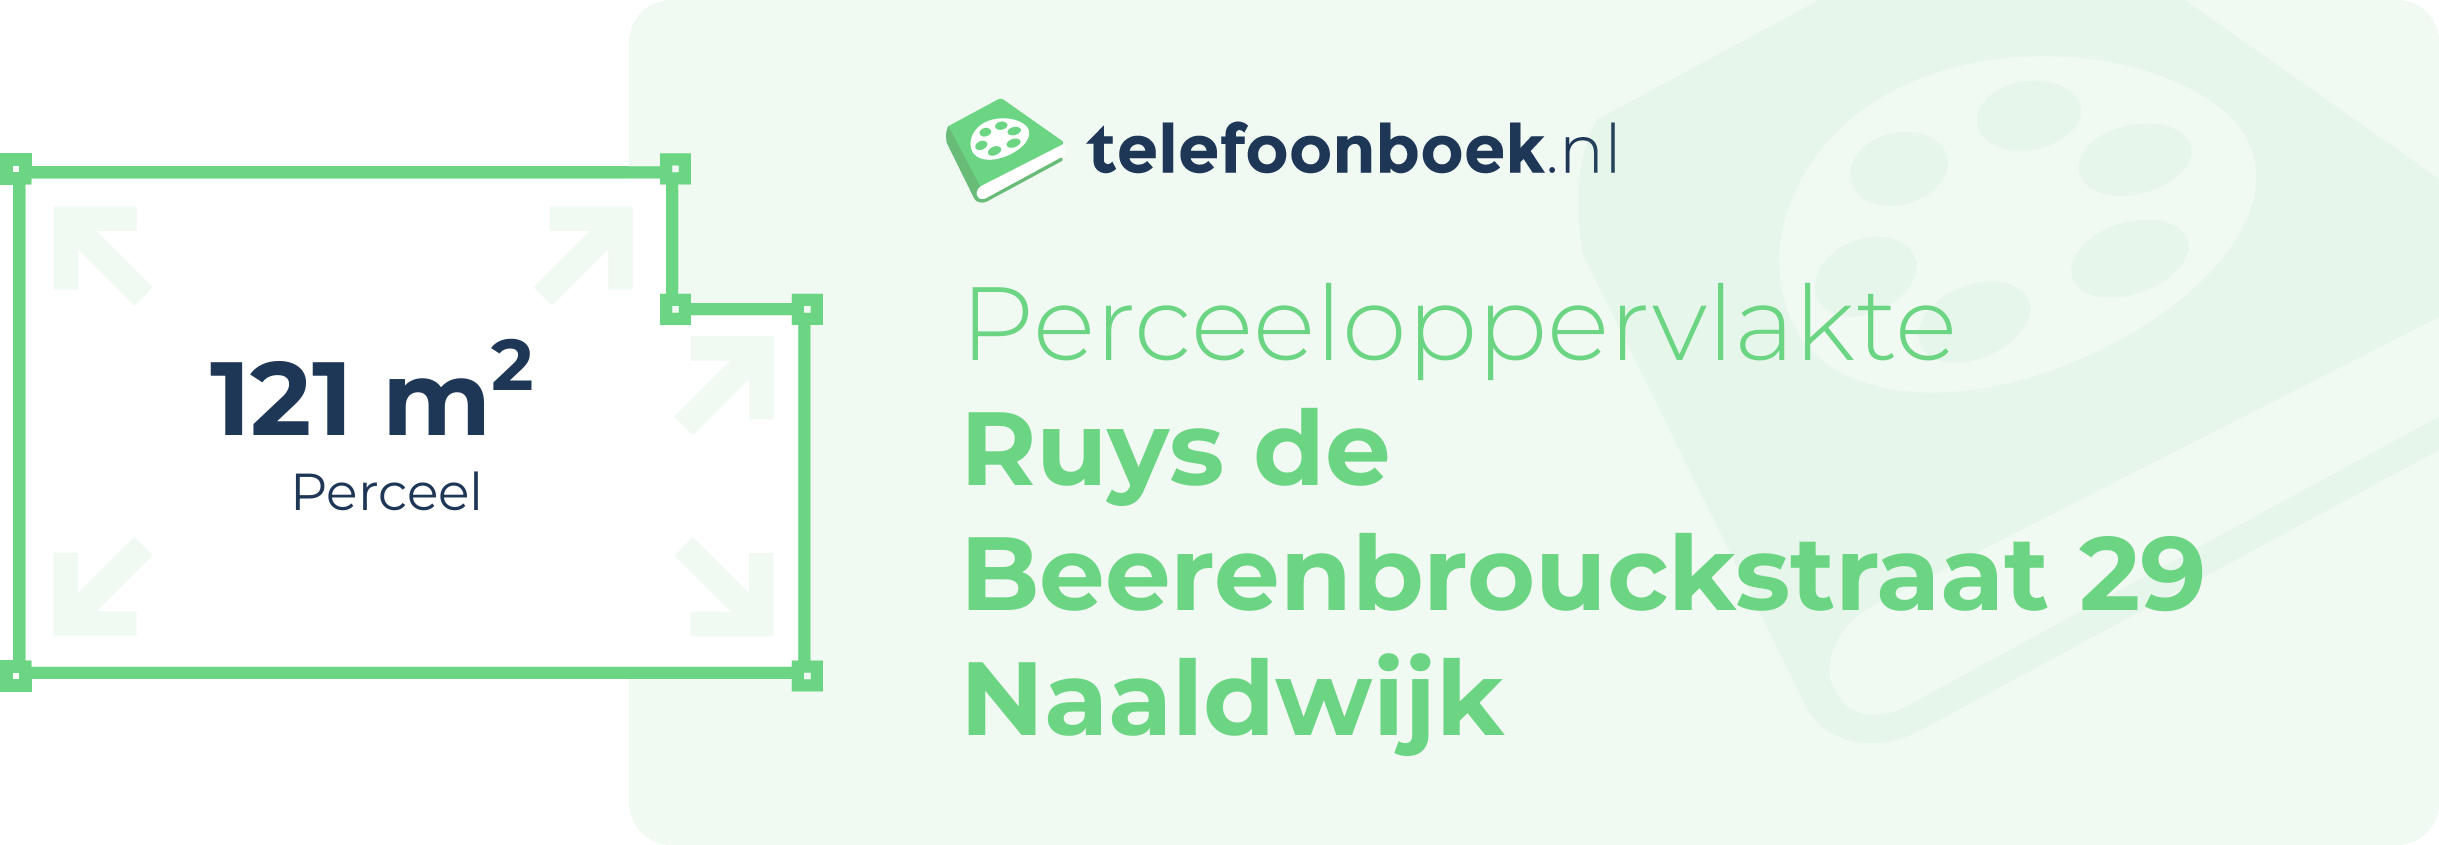 Perceeloppervlakte Ruys De Beerenbrouckstraat 29 Naaldwijk